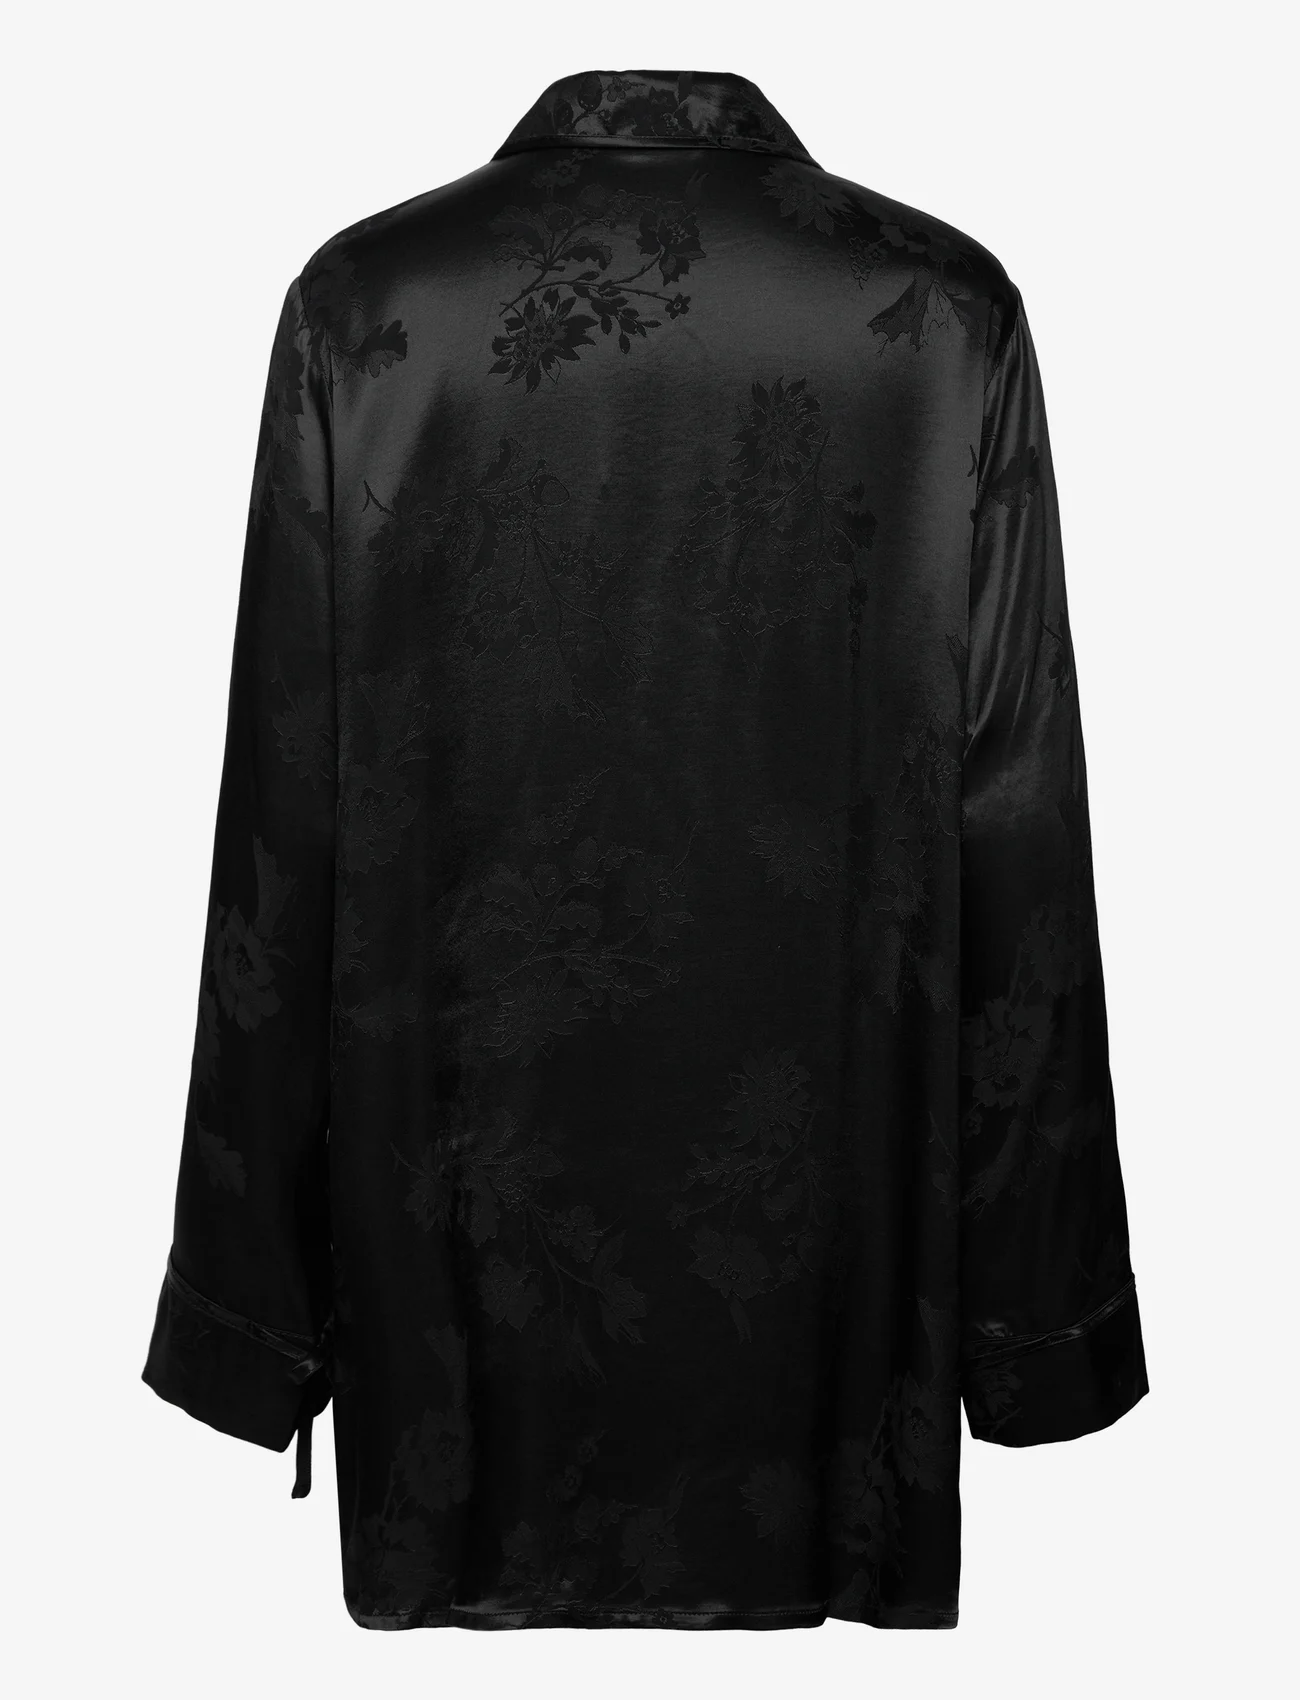 HOLZWEILER - Pom Jaquard Shirt - langermede skjorter - black - 1